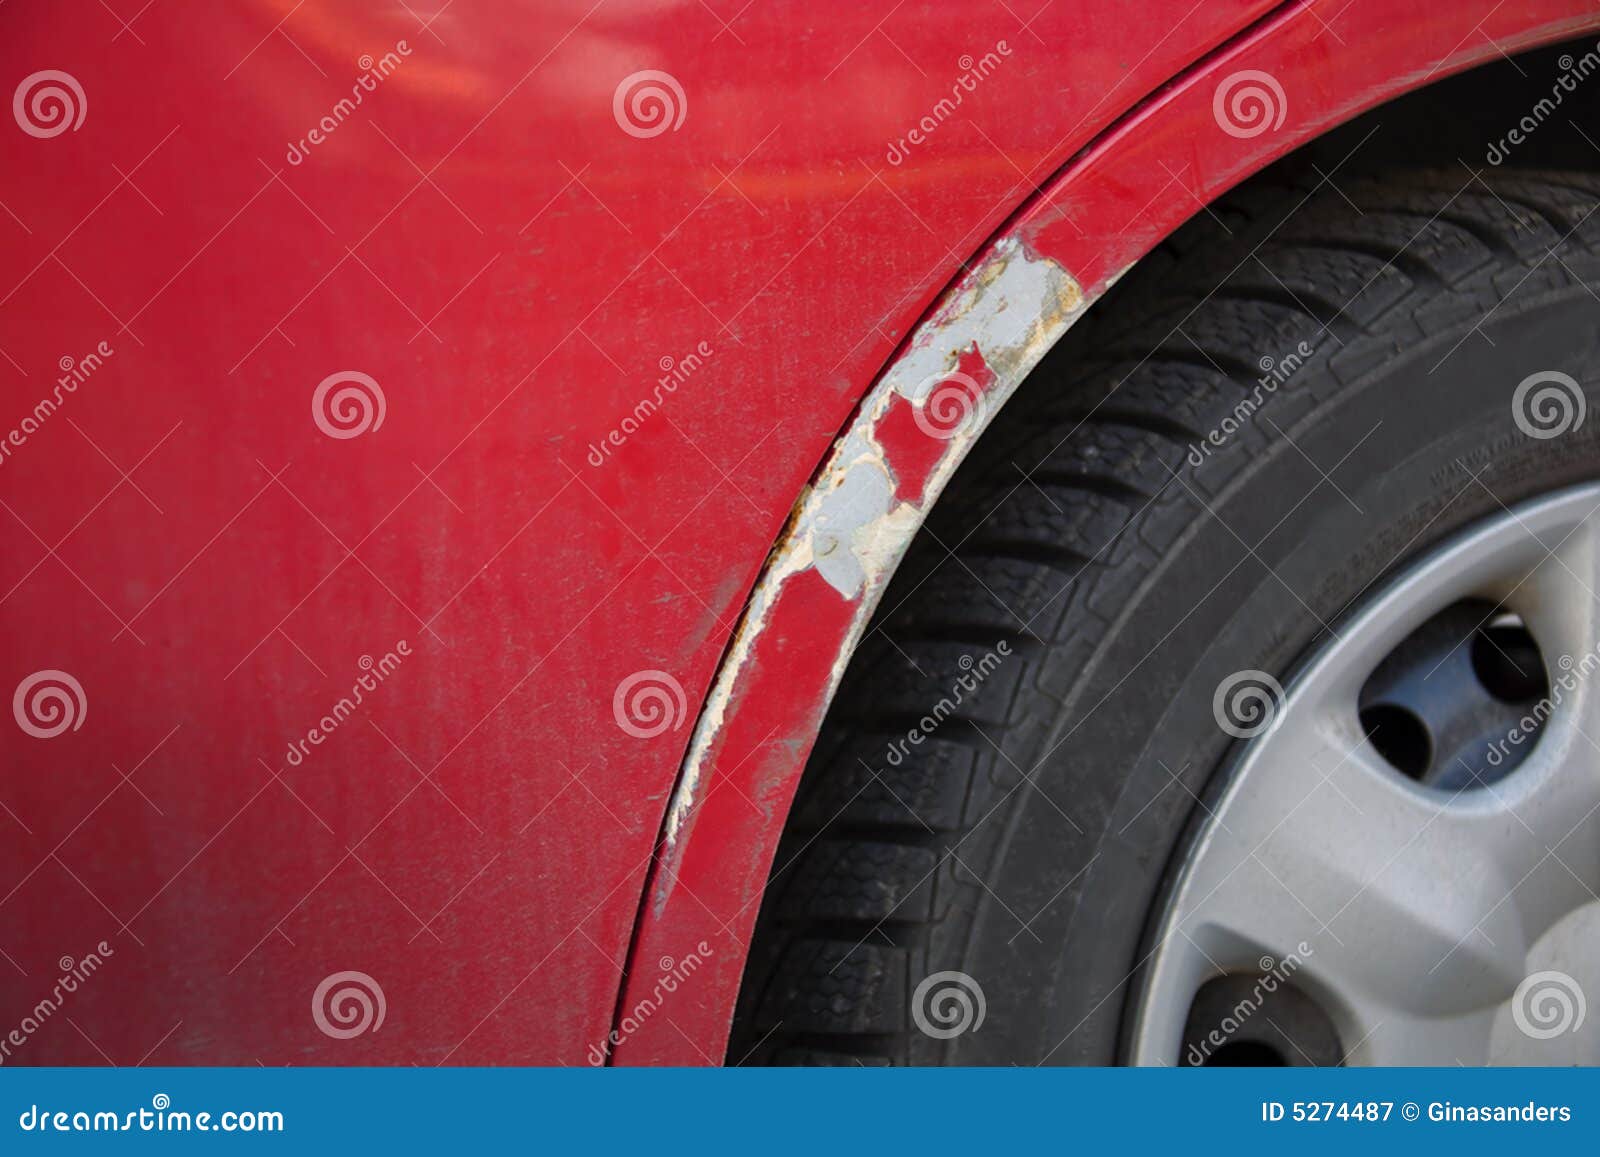 Появляются сколы и потертости лакокрасочного покрытия на задних крыльях Chevrolet Aveo фото